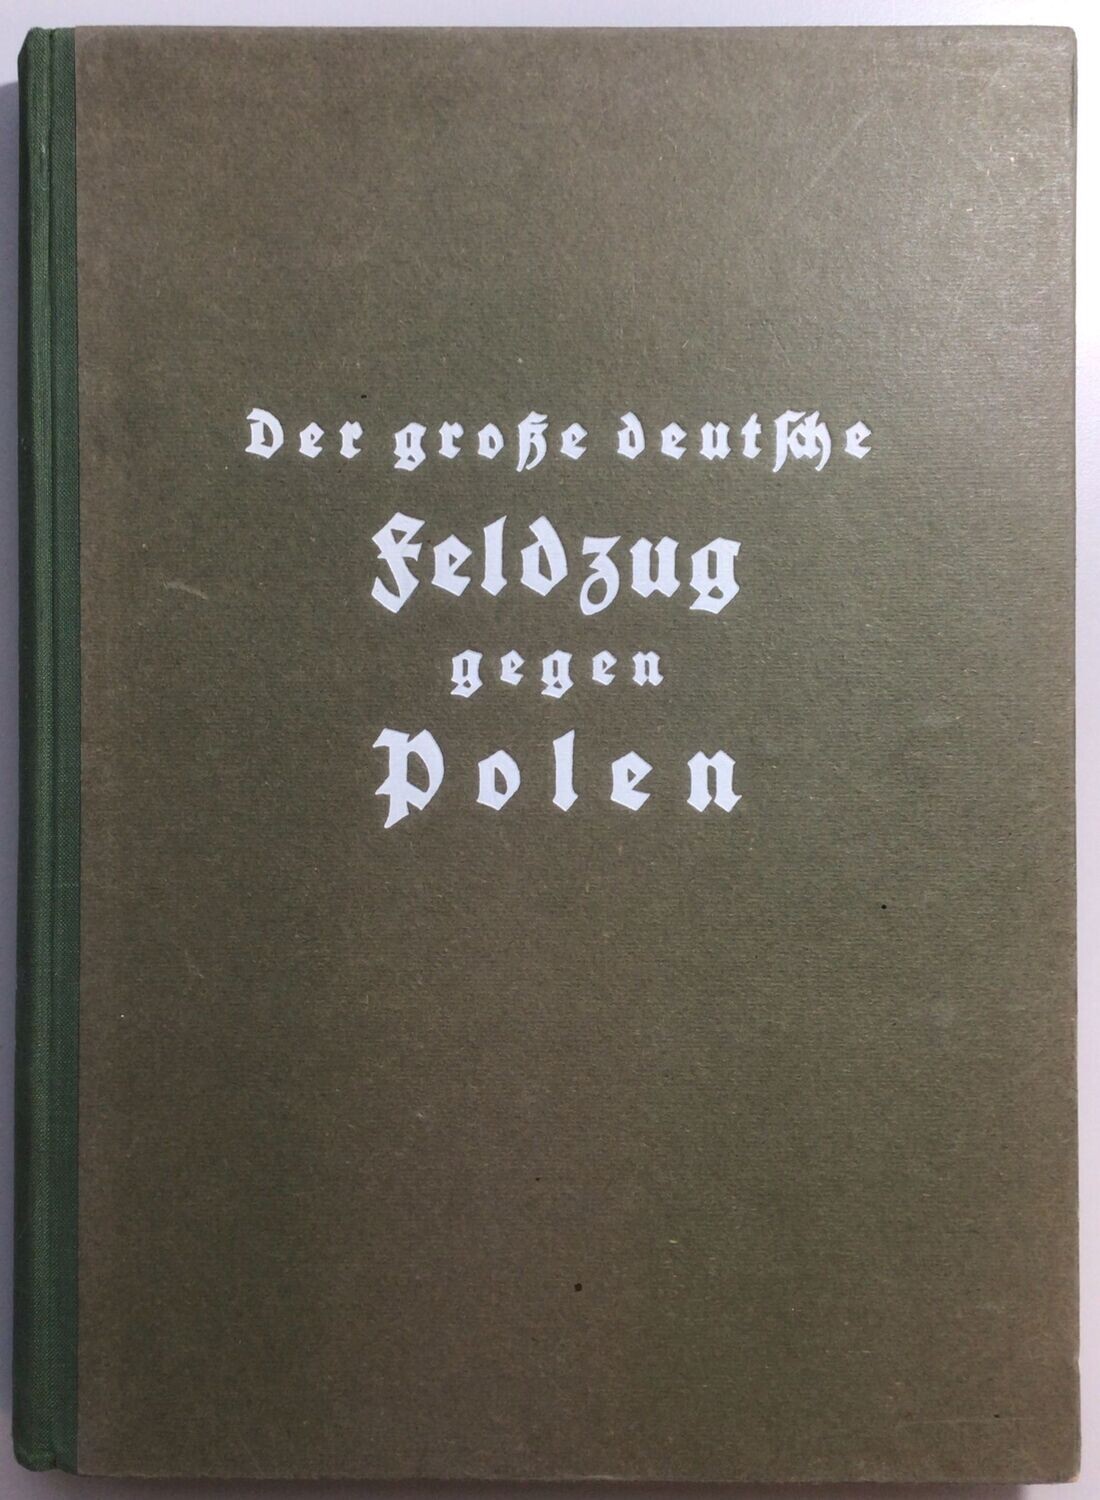 Der große deutsche Feldzug gegen Polen. Eine Chronik des Krieges in Wort und Bild - Halbleinenausgabe aus dem Jahr 1940.